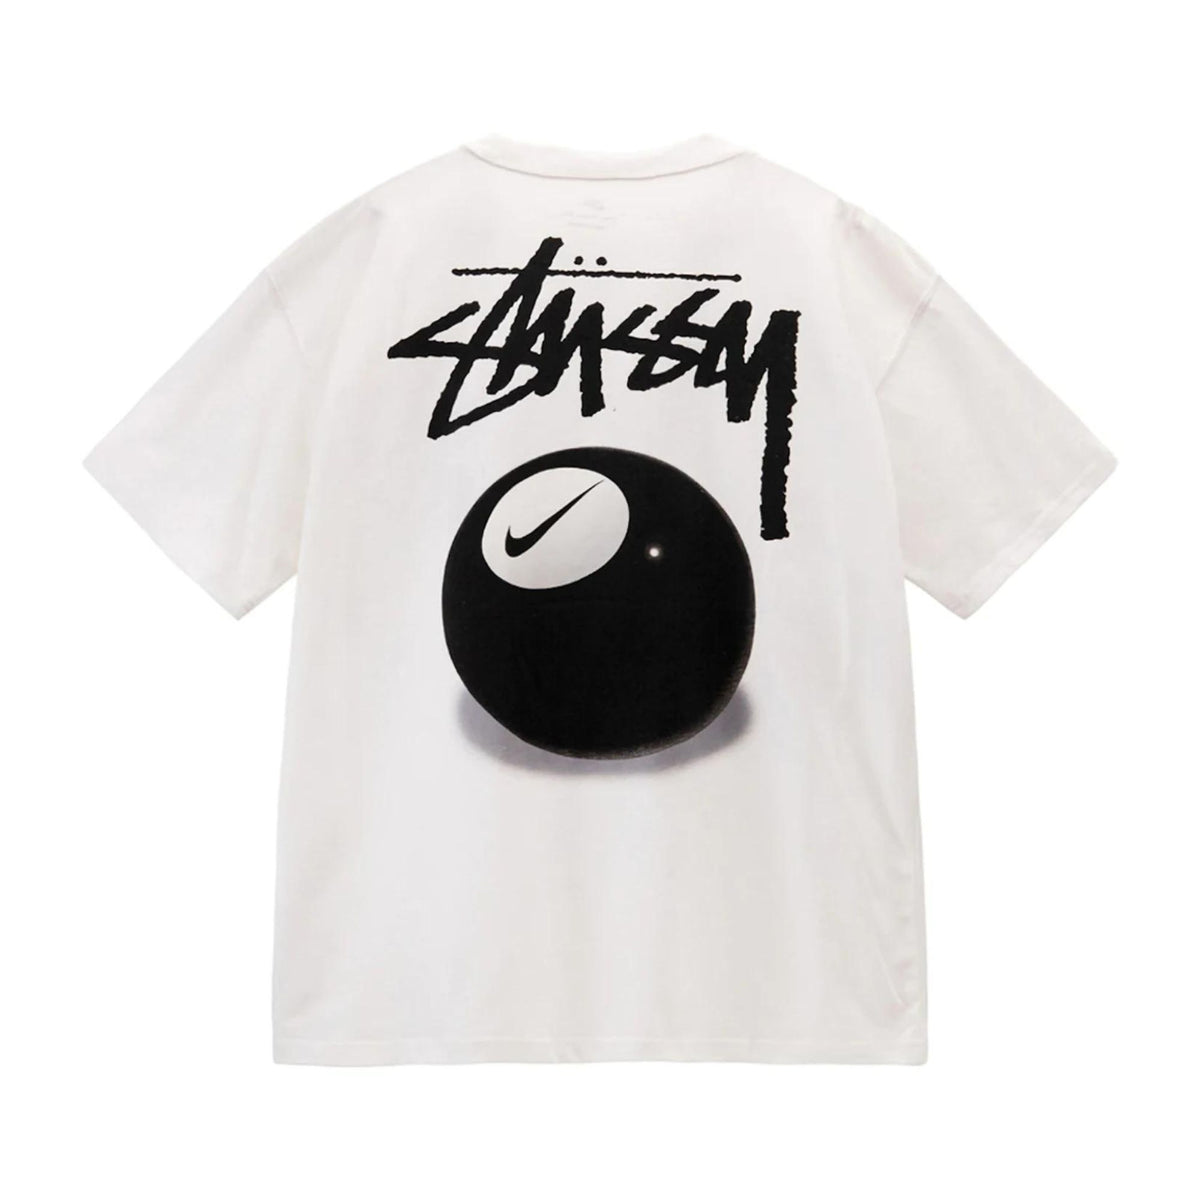 Nike x Stüssy 8 Ball T-shirt "Multi" - Streetwear - street-bill.dk